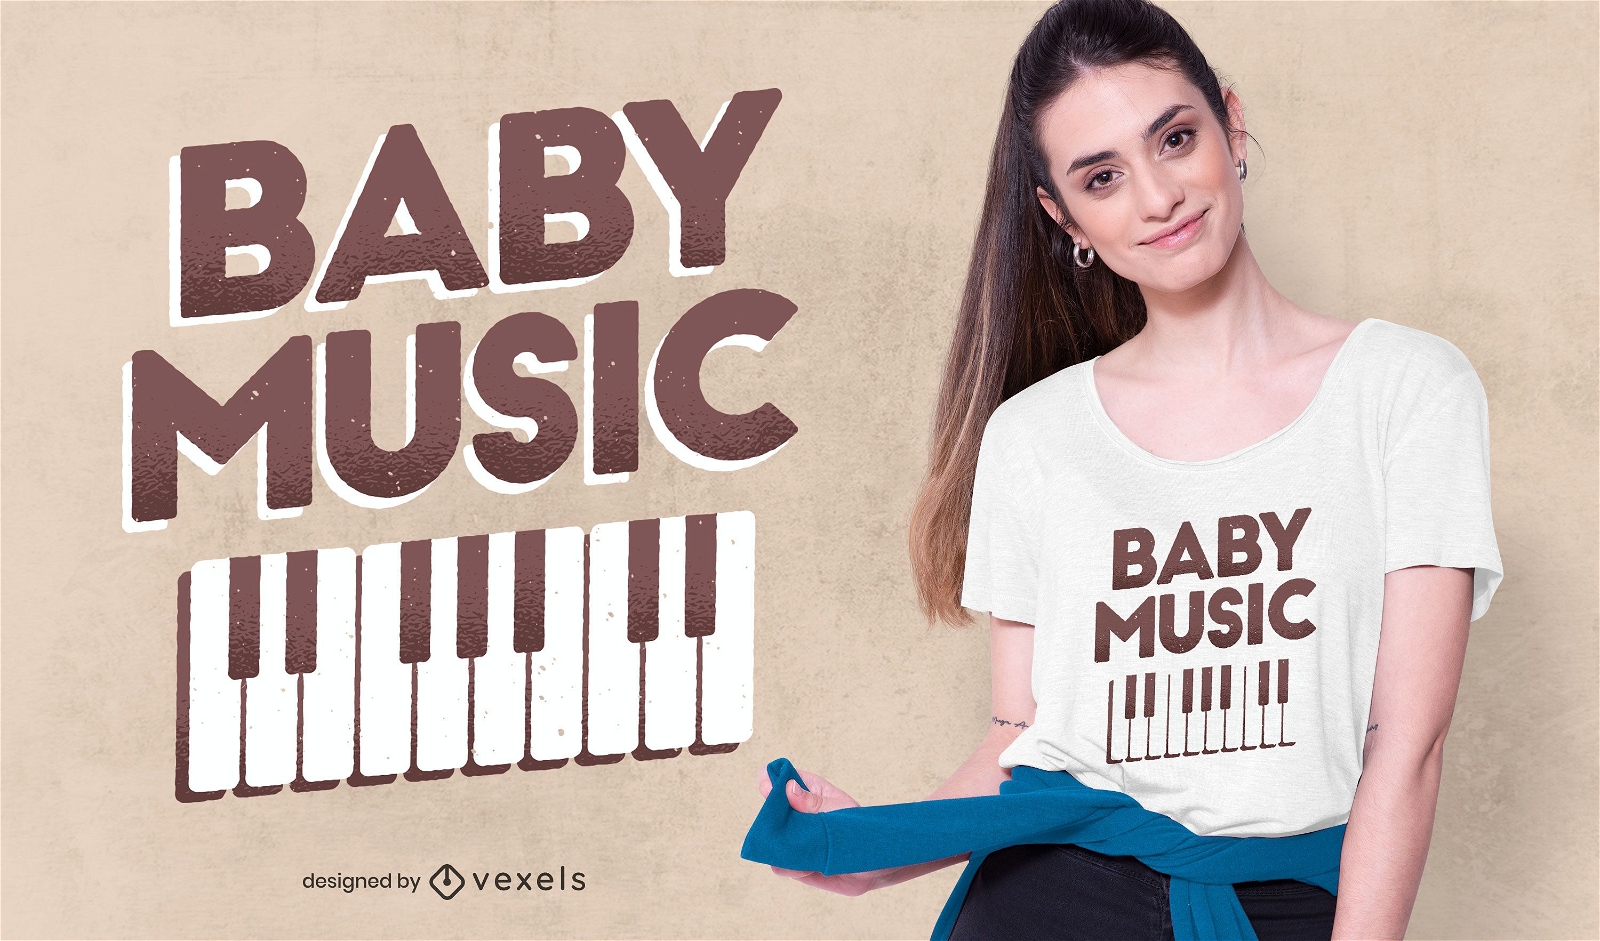 Baby music t-shirt design